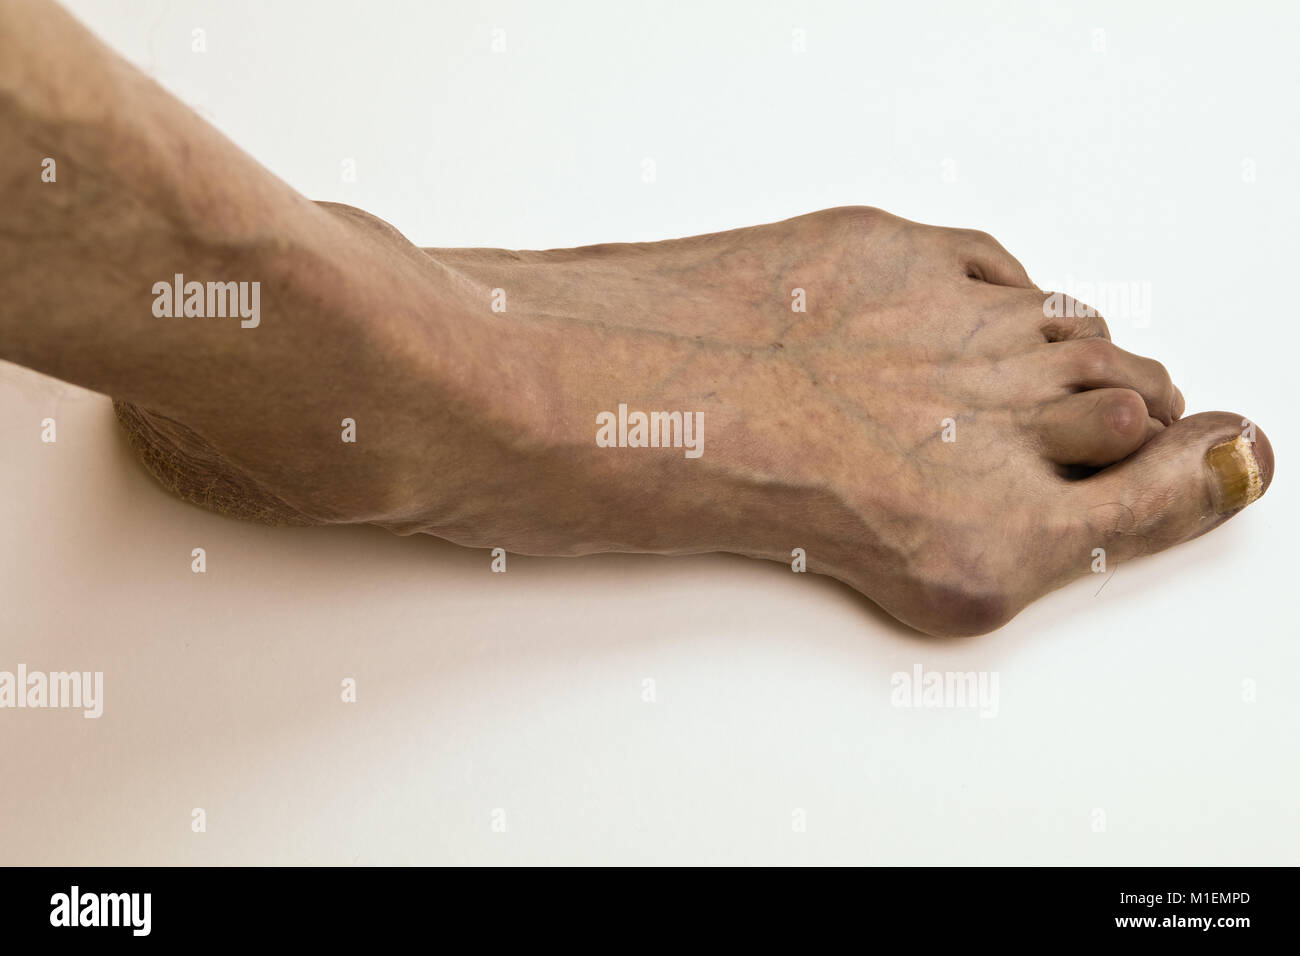 Mißbildung der menschliche Fuß - Hallux valgus Stockfoto